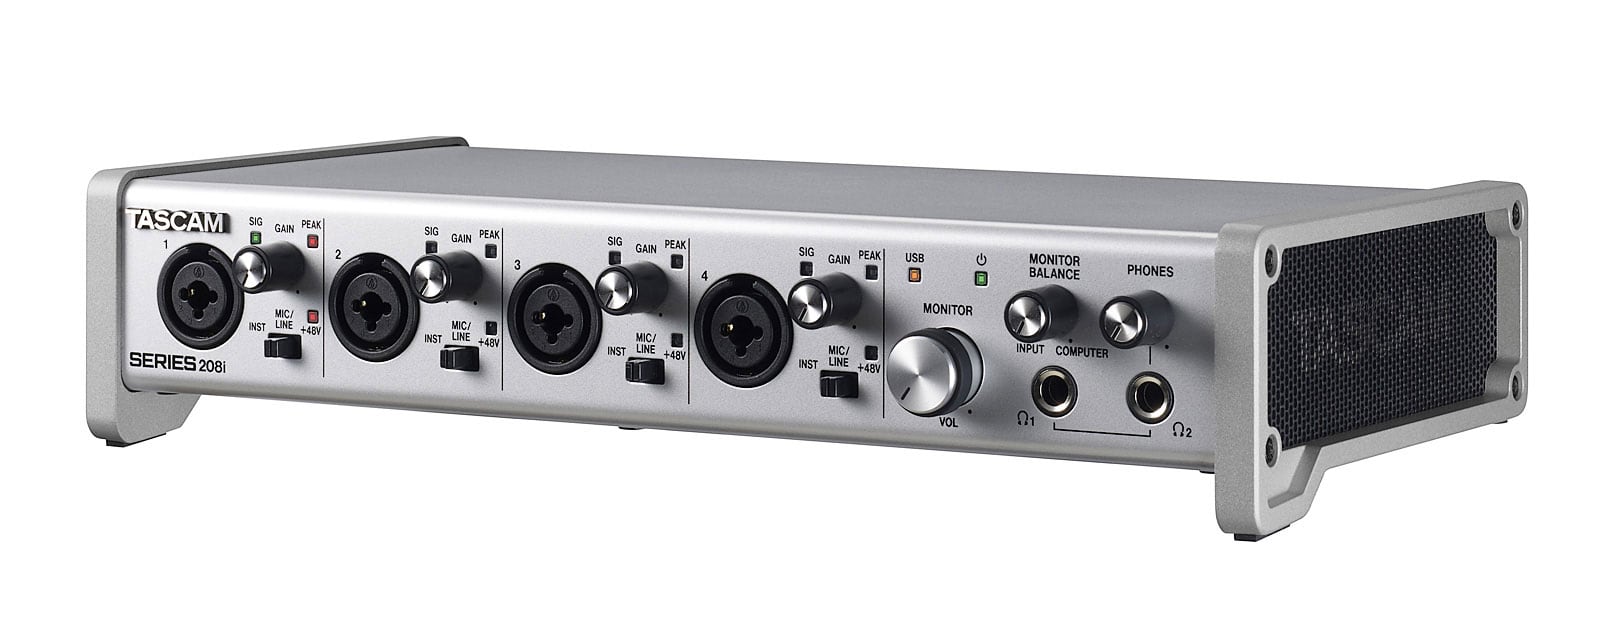 Serie PX - Descripción - Amplificadores - Sonido profesional - Productos -  Yamaha - España